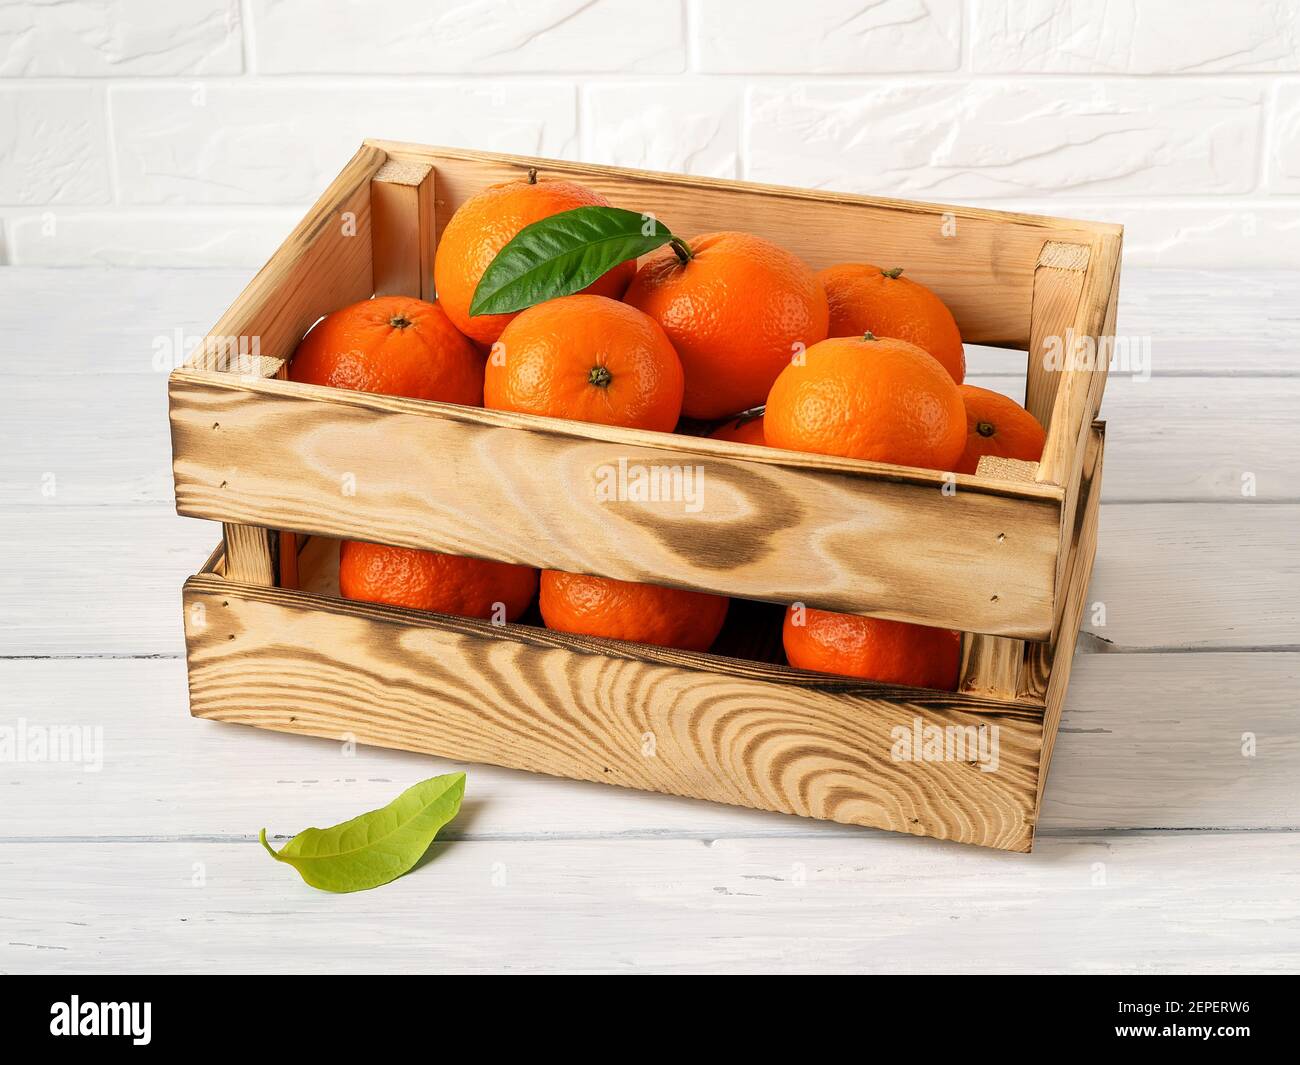 Caja de madera con mandarinas de color naranja dulce en una mesa de cocina.  Cítricos frescos en caja de madera. Envases ecológicos de estilo rústico  para frutas y veggi Fotografía de stock -